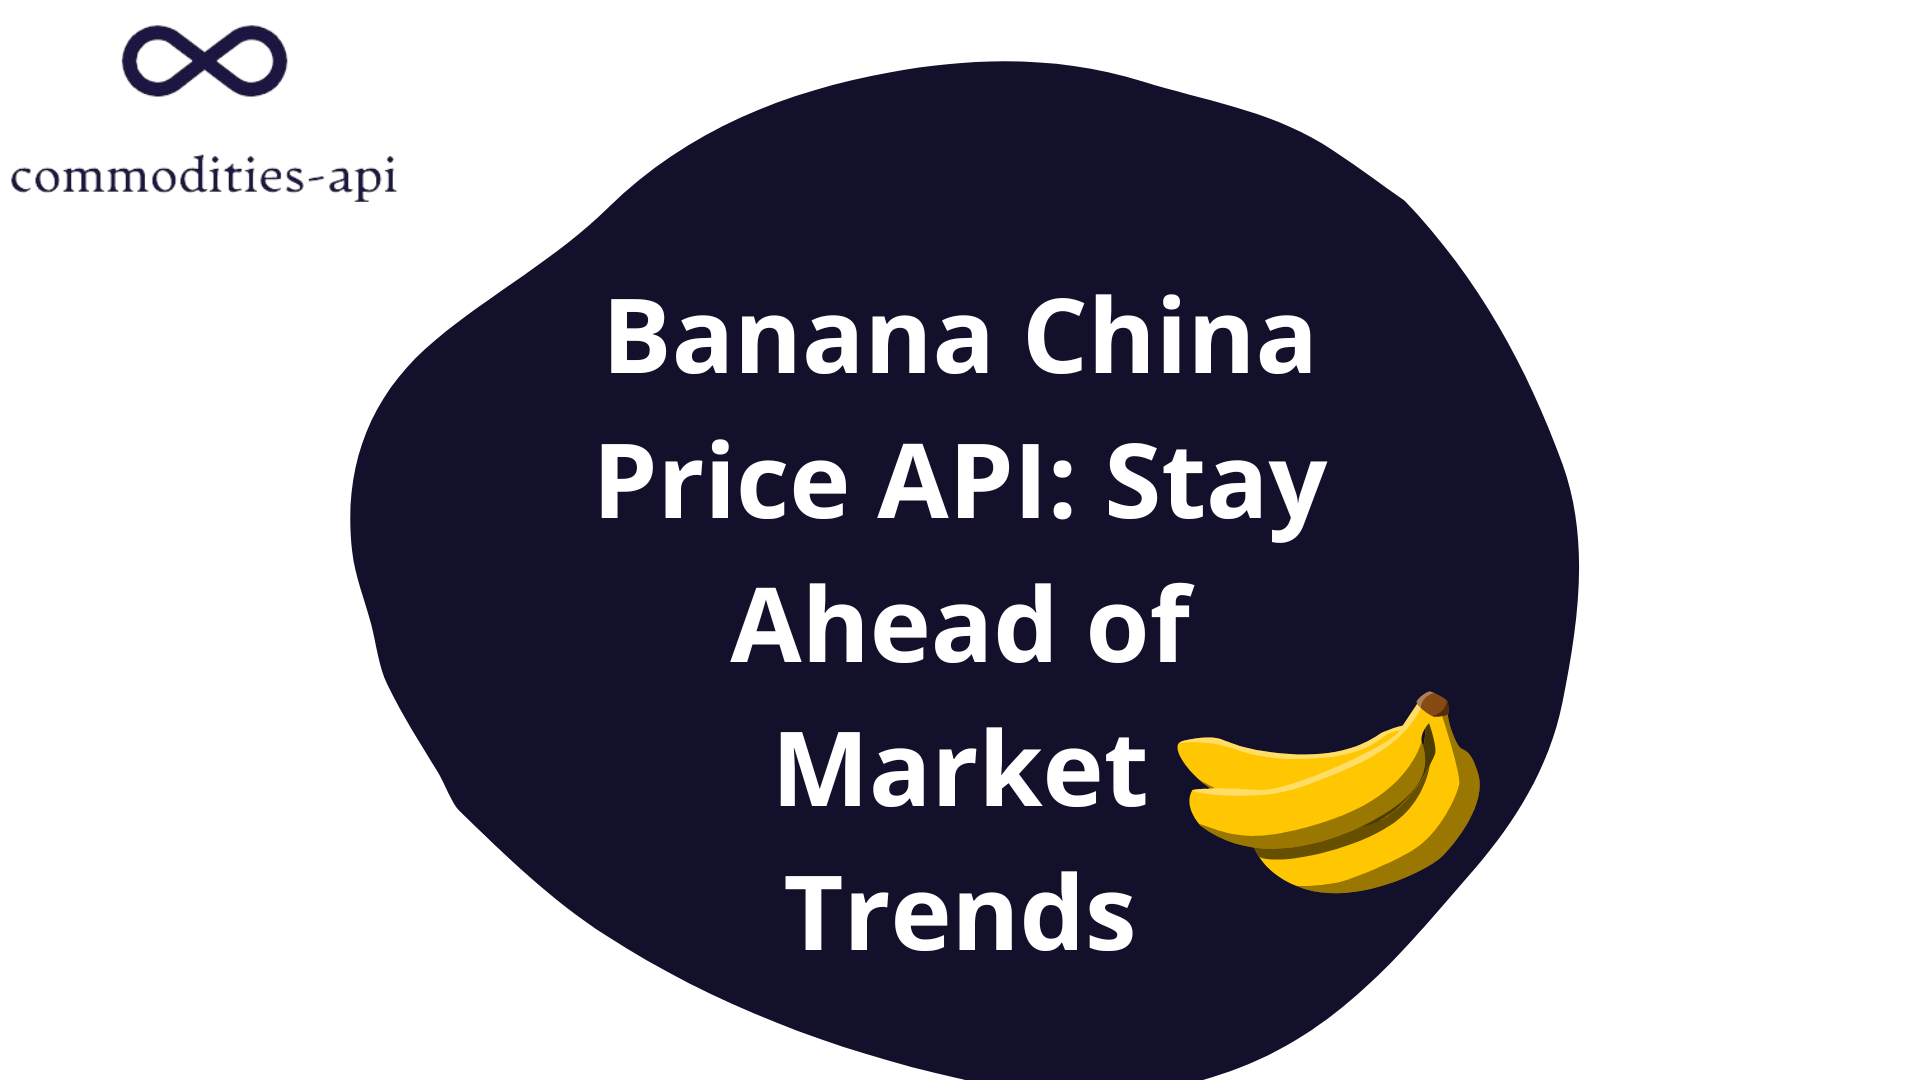 Banana China Price API: Stay Ahead of Market Trends